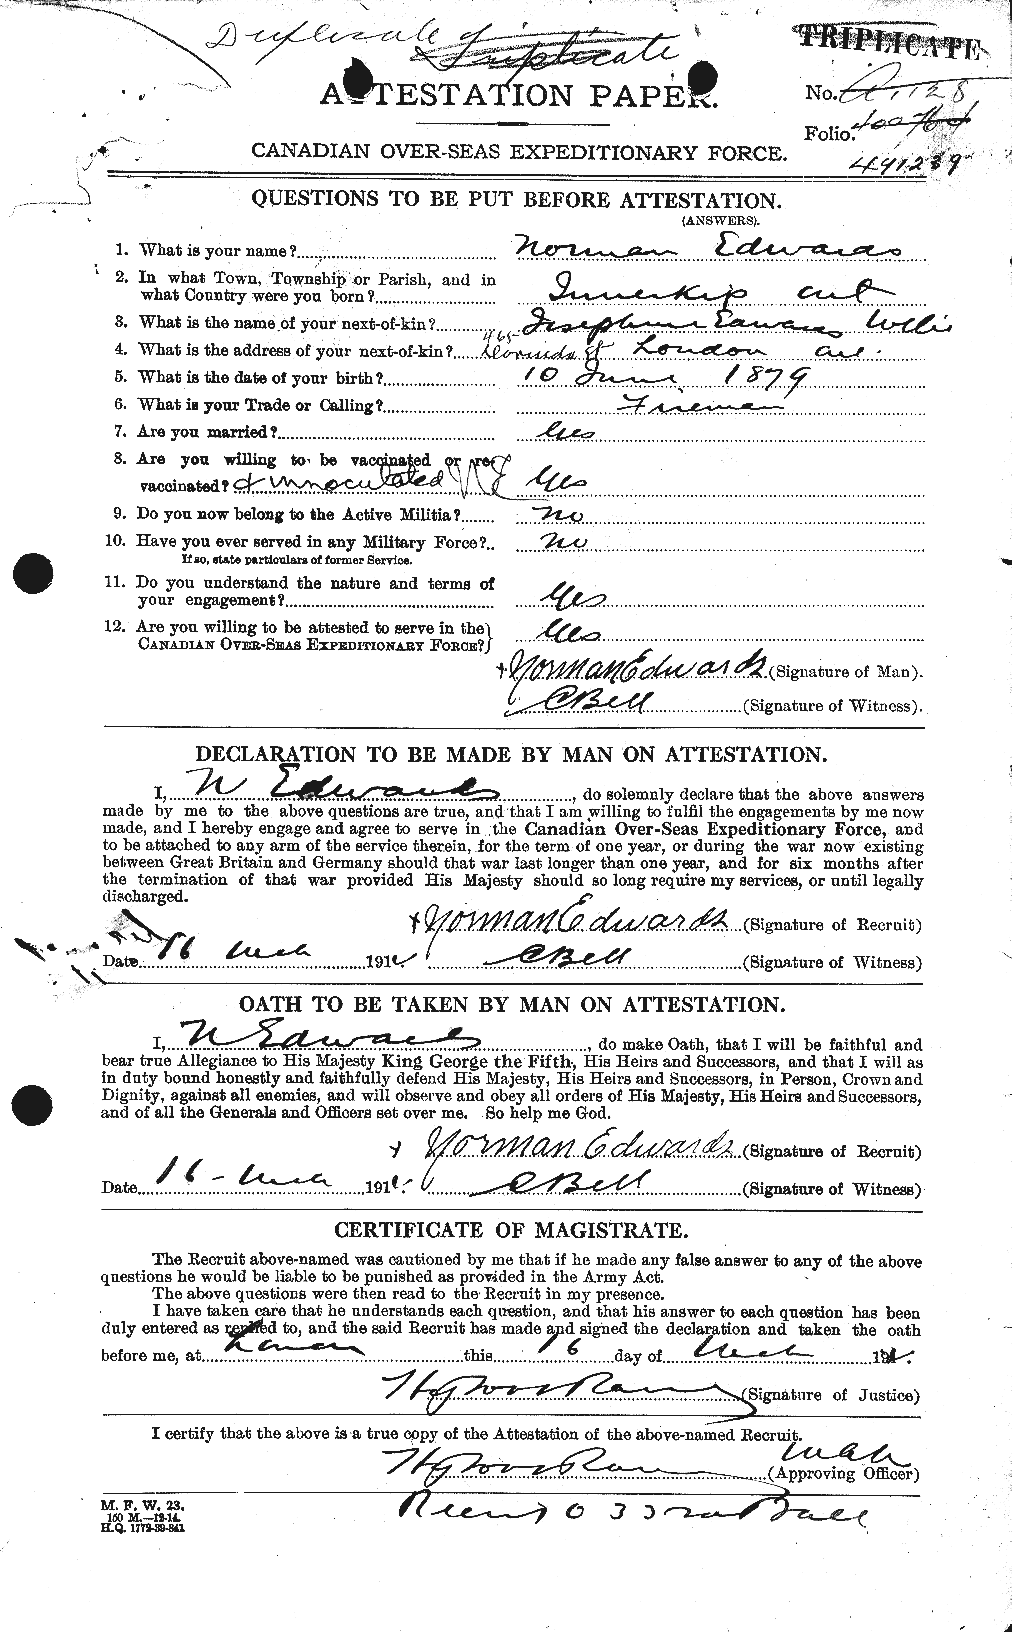 Dossiers du Personnel de la Première Guerre mondiale - CEC 310220a